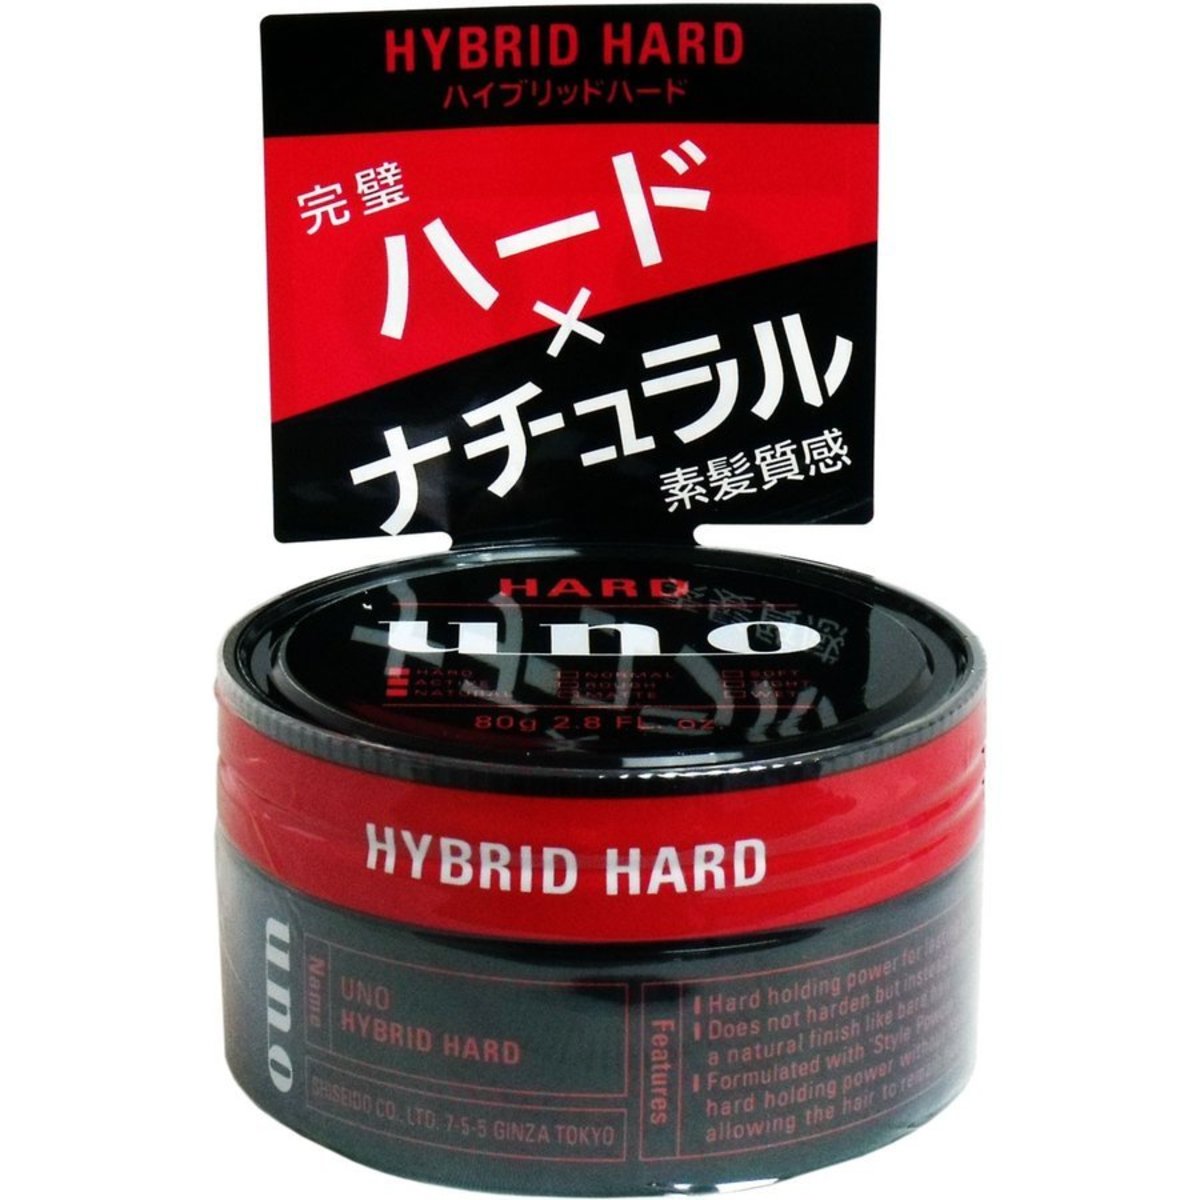 uno Hybrid Hard 定型髮蠟 80g【平行進口貨品】